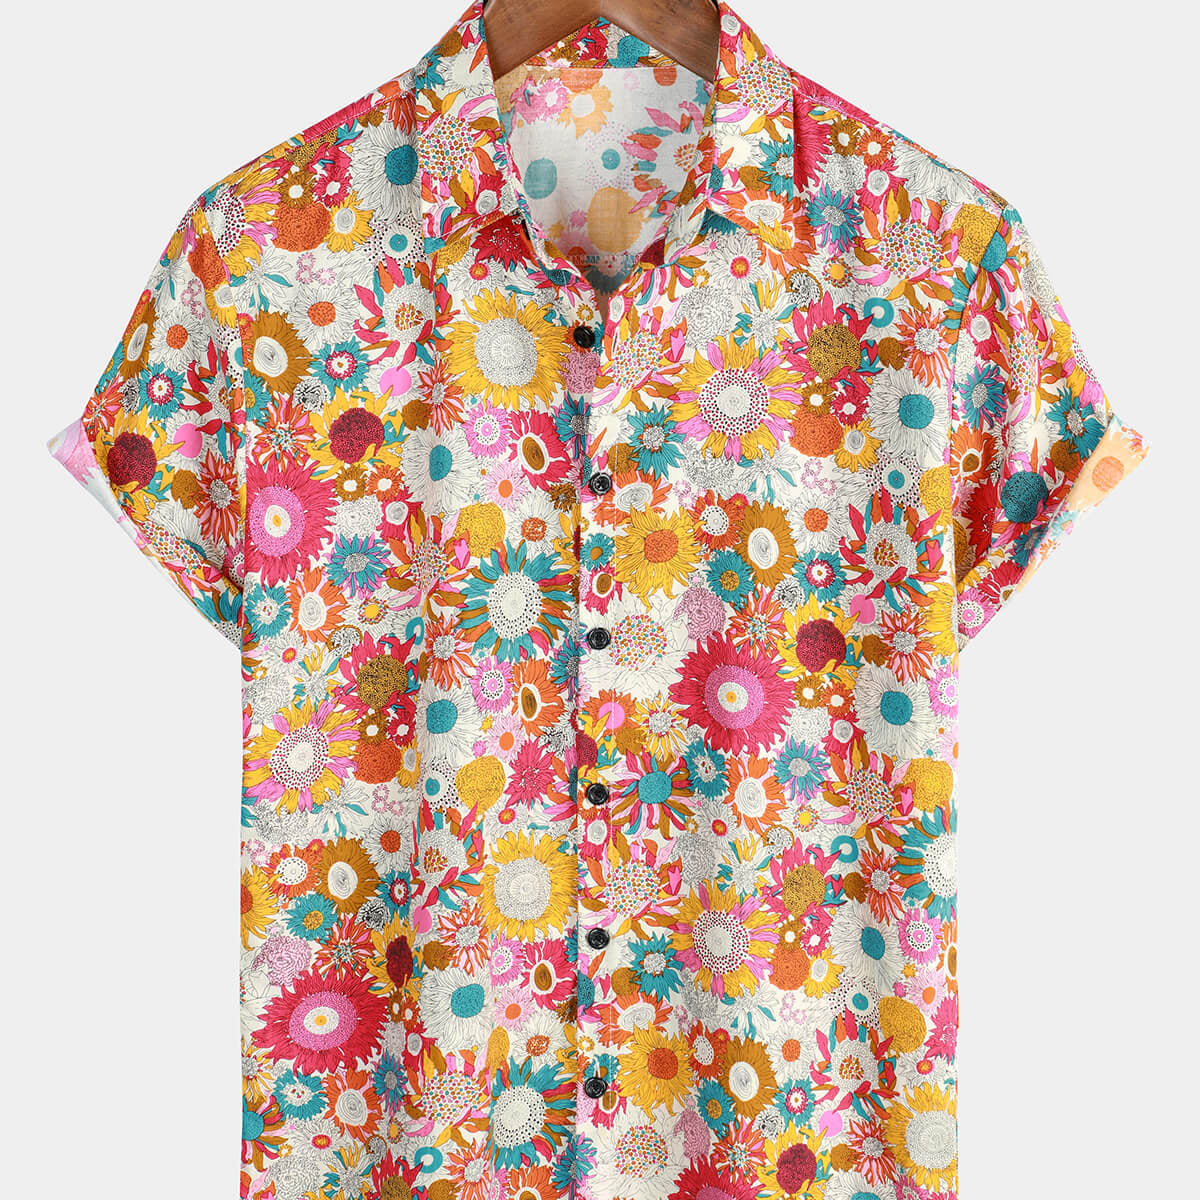 Men's Floral Cool Flower Summer Cotton Button Up Beach Short Sleeve Hawaiian Shirt